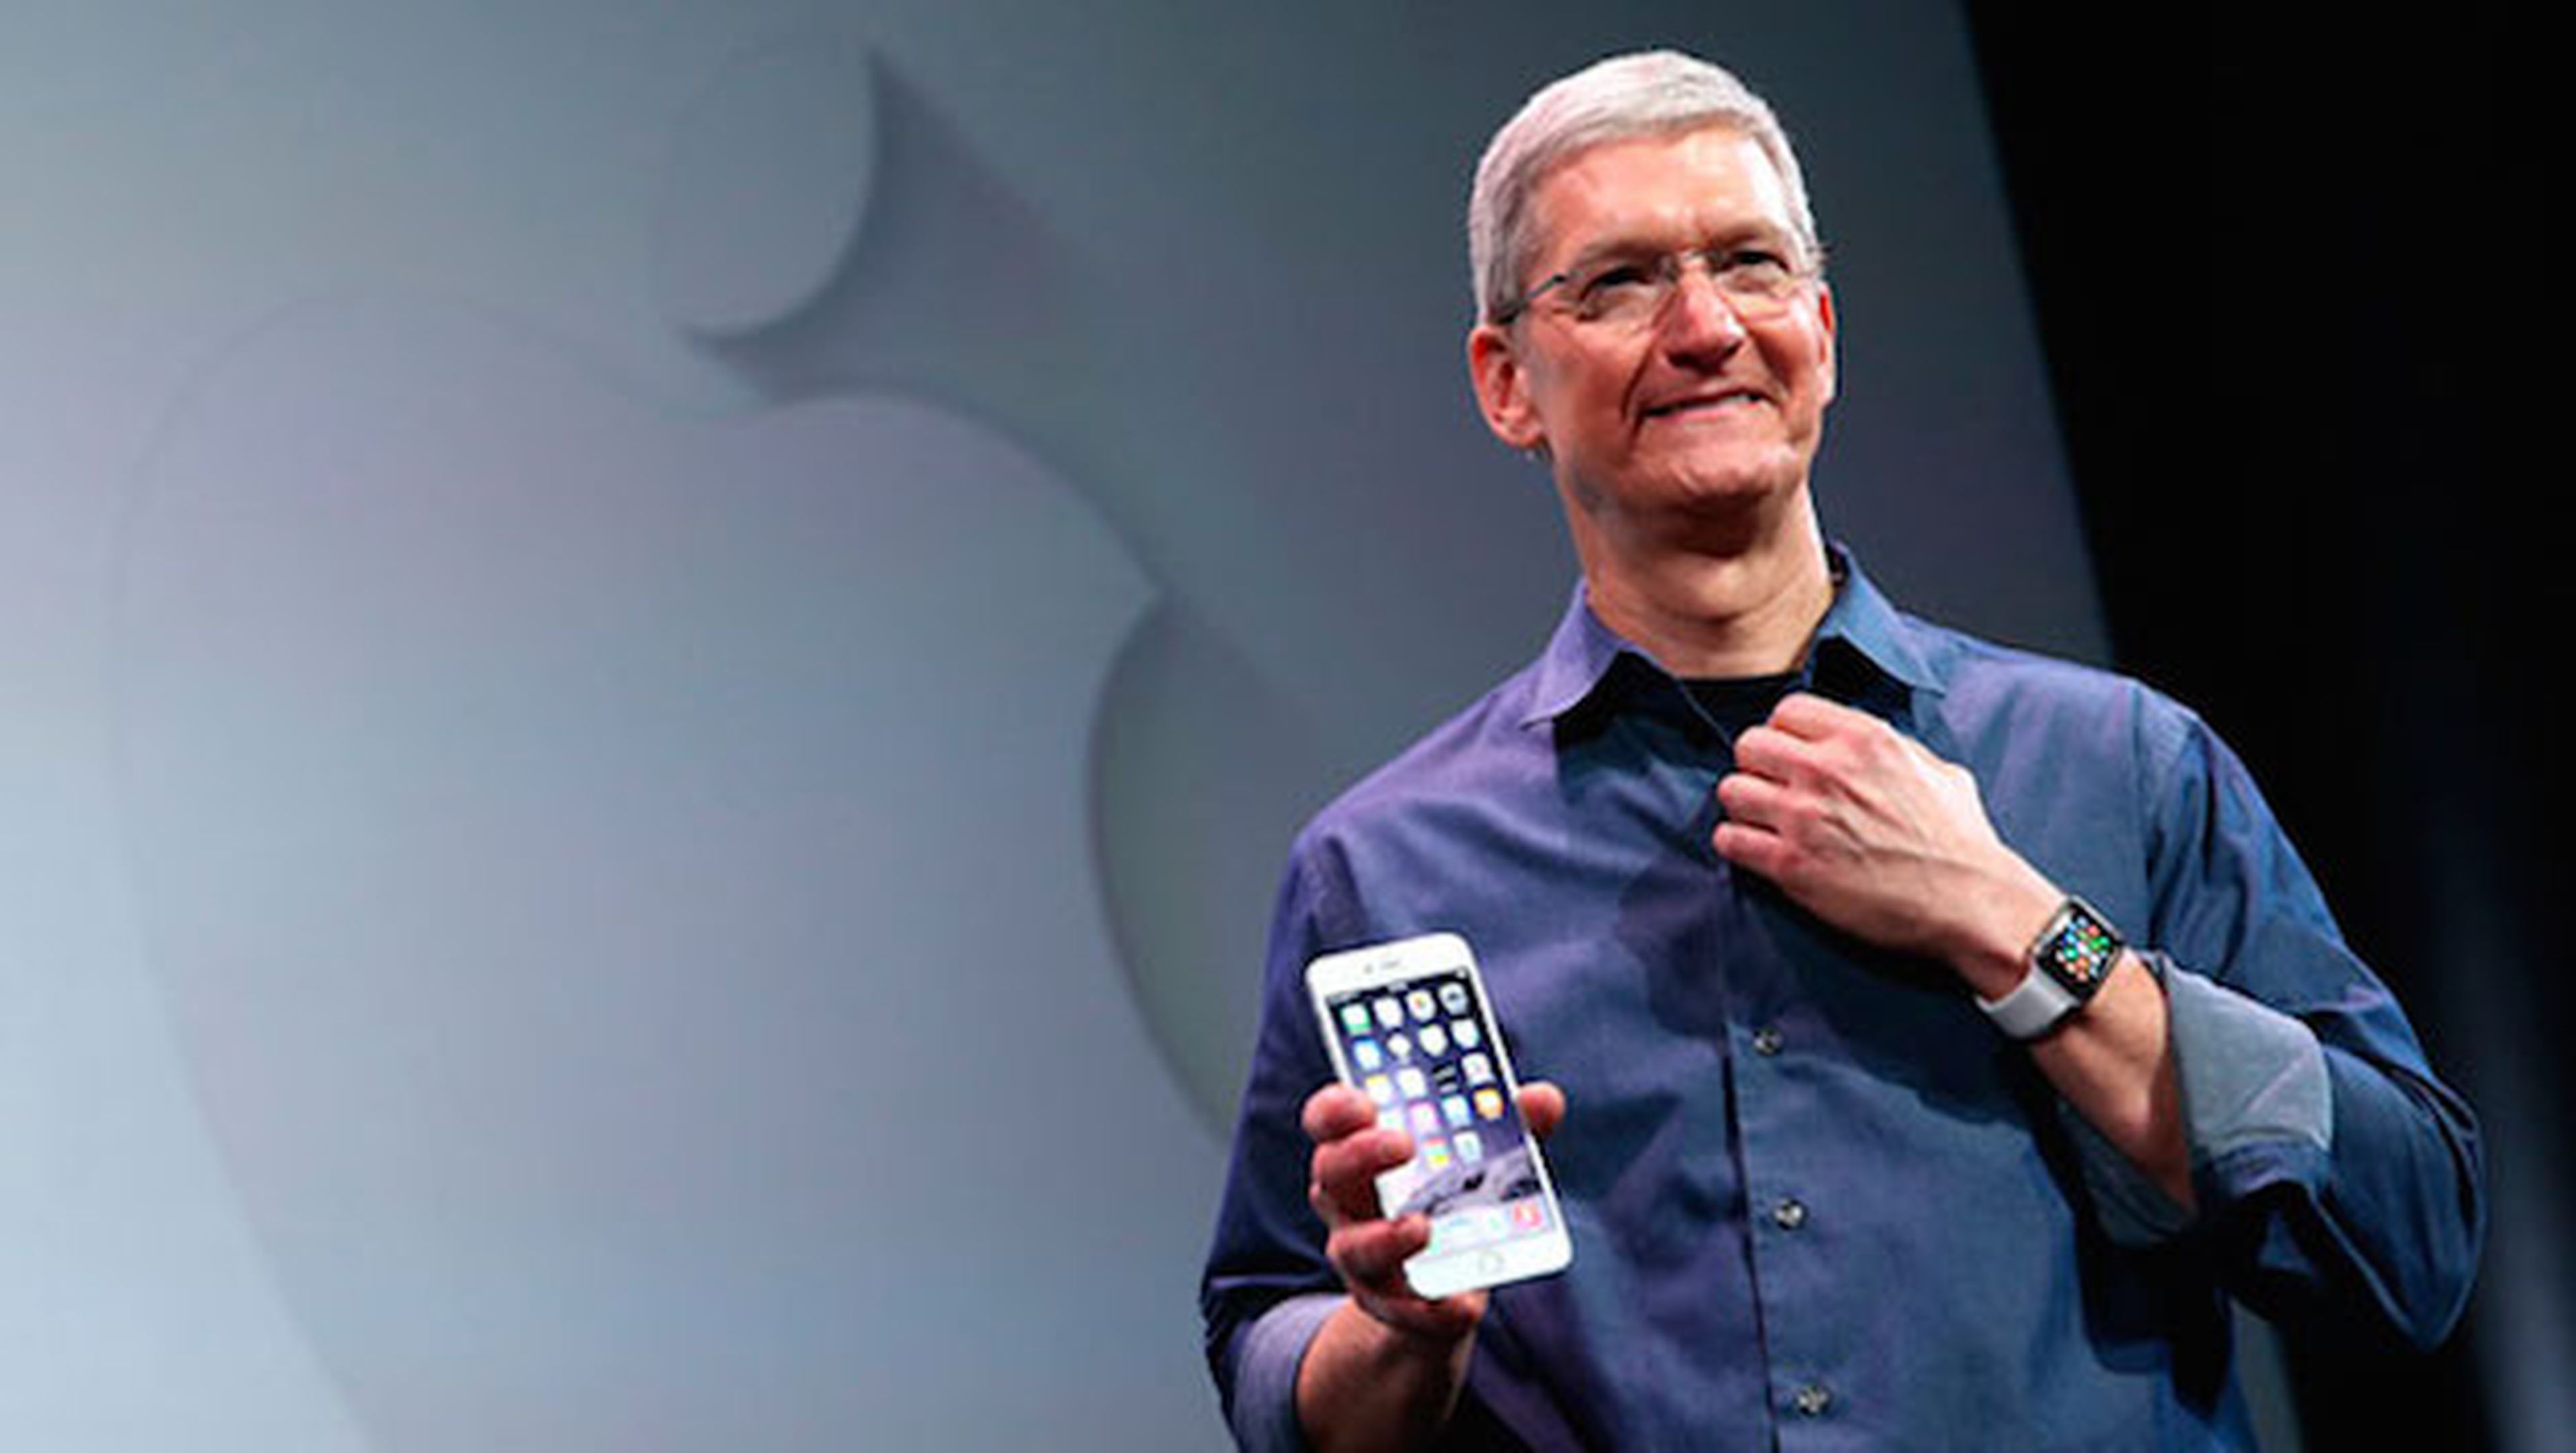 Nuevo iPhone podría llegar el 9 de septiembre